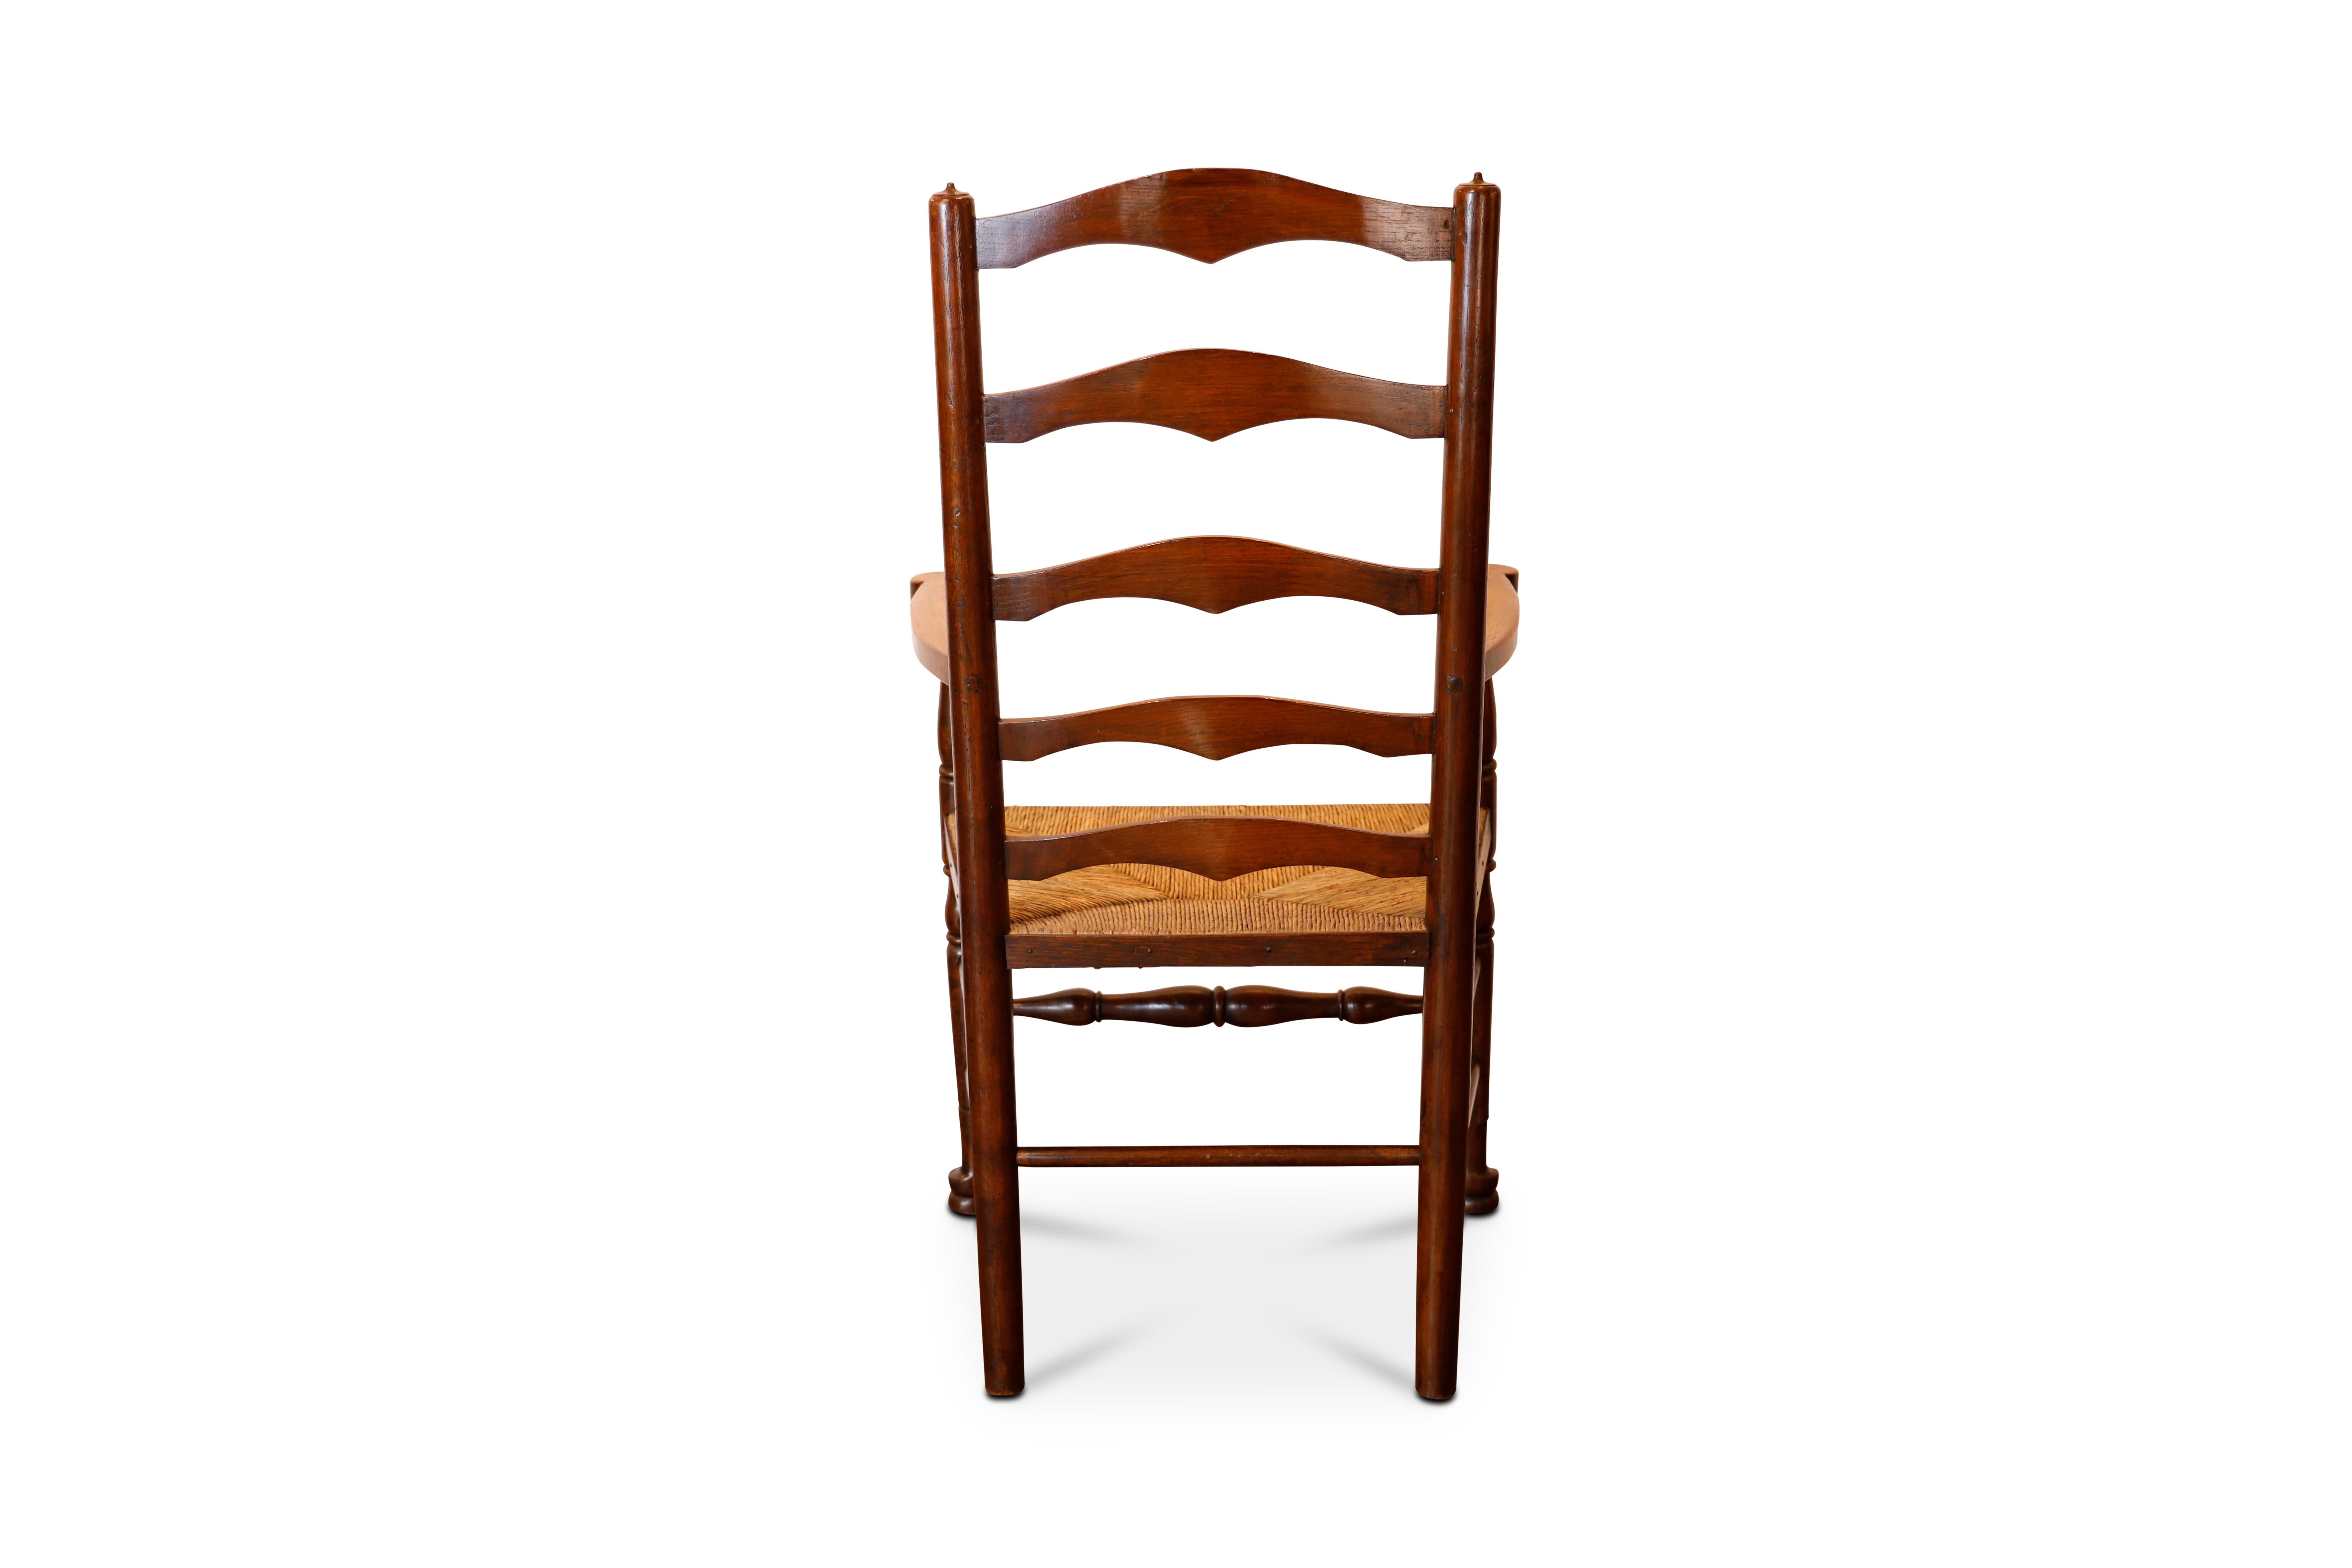 Fin du 19ème siècle. Chaises à dossier en échelle en chêne anglais avec sièges en jonc et brancards tournés.   2 bras, 6 côtés.